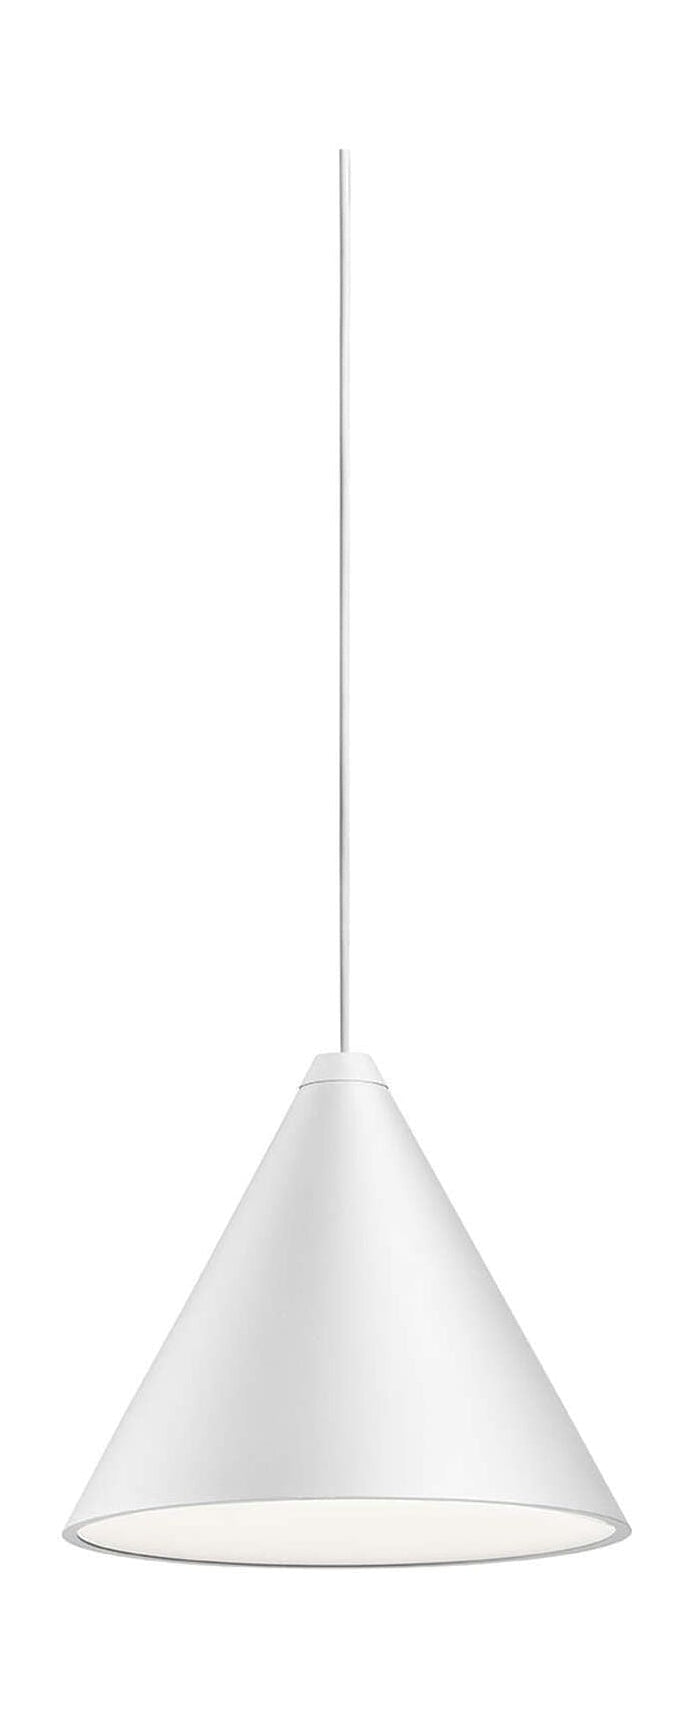 Lampa wisiorka na głowicę stożkową FLOS Bluetooth 22 m, biały